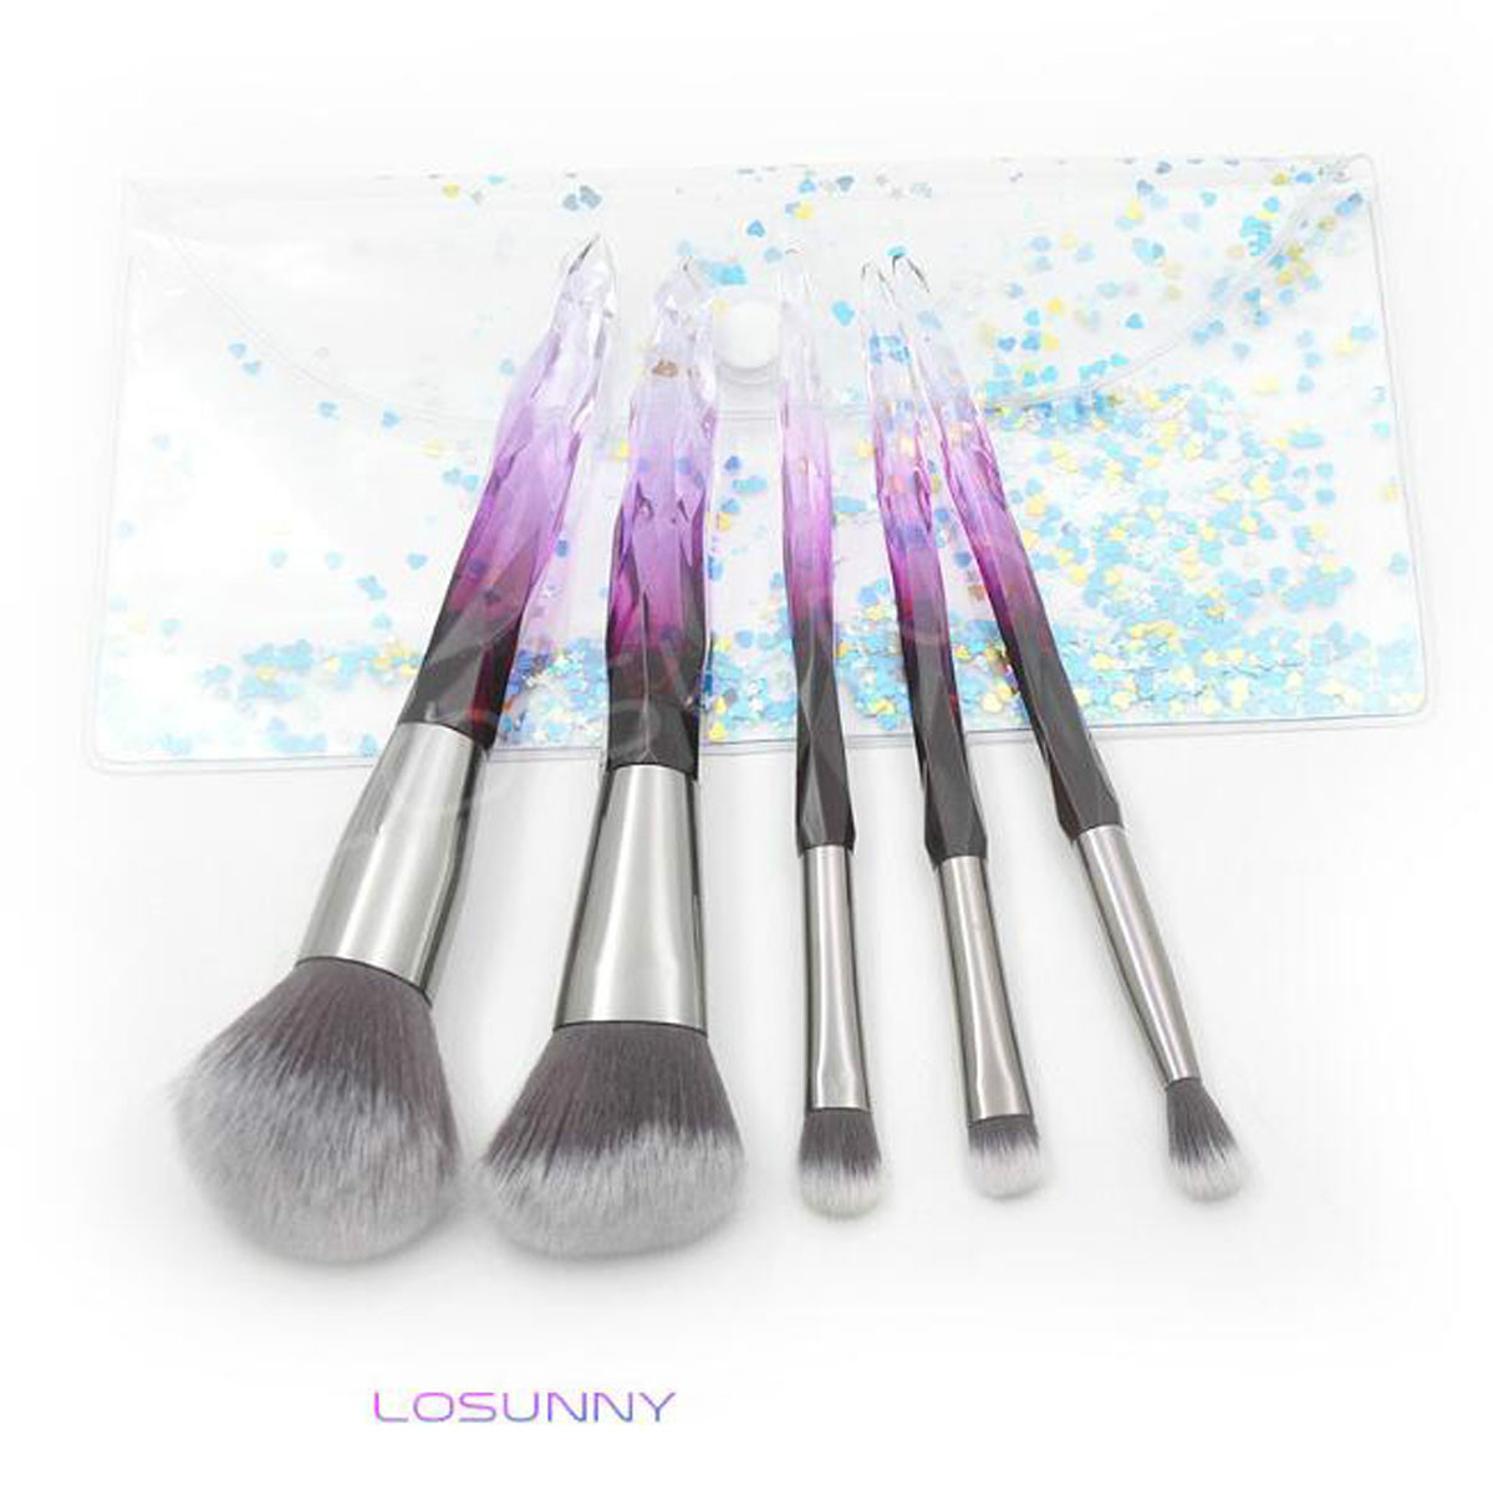 Изображение товара: LOSUNNY 5 шт., набор кистей для макияжа с прозрачной кристаллической ручкой, набор кистей для глаз, ПВХ, упаковочные принадлежности для макияжа, зеленый-мульти, инструменты для красоты